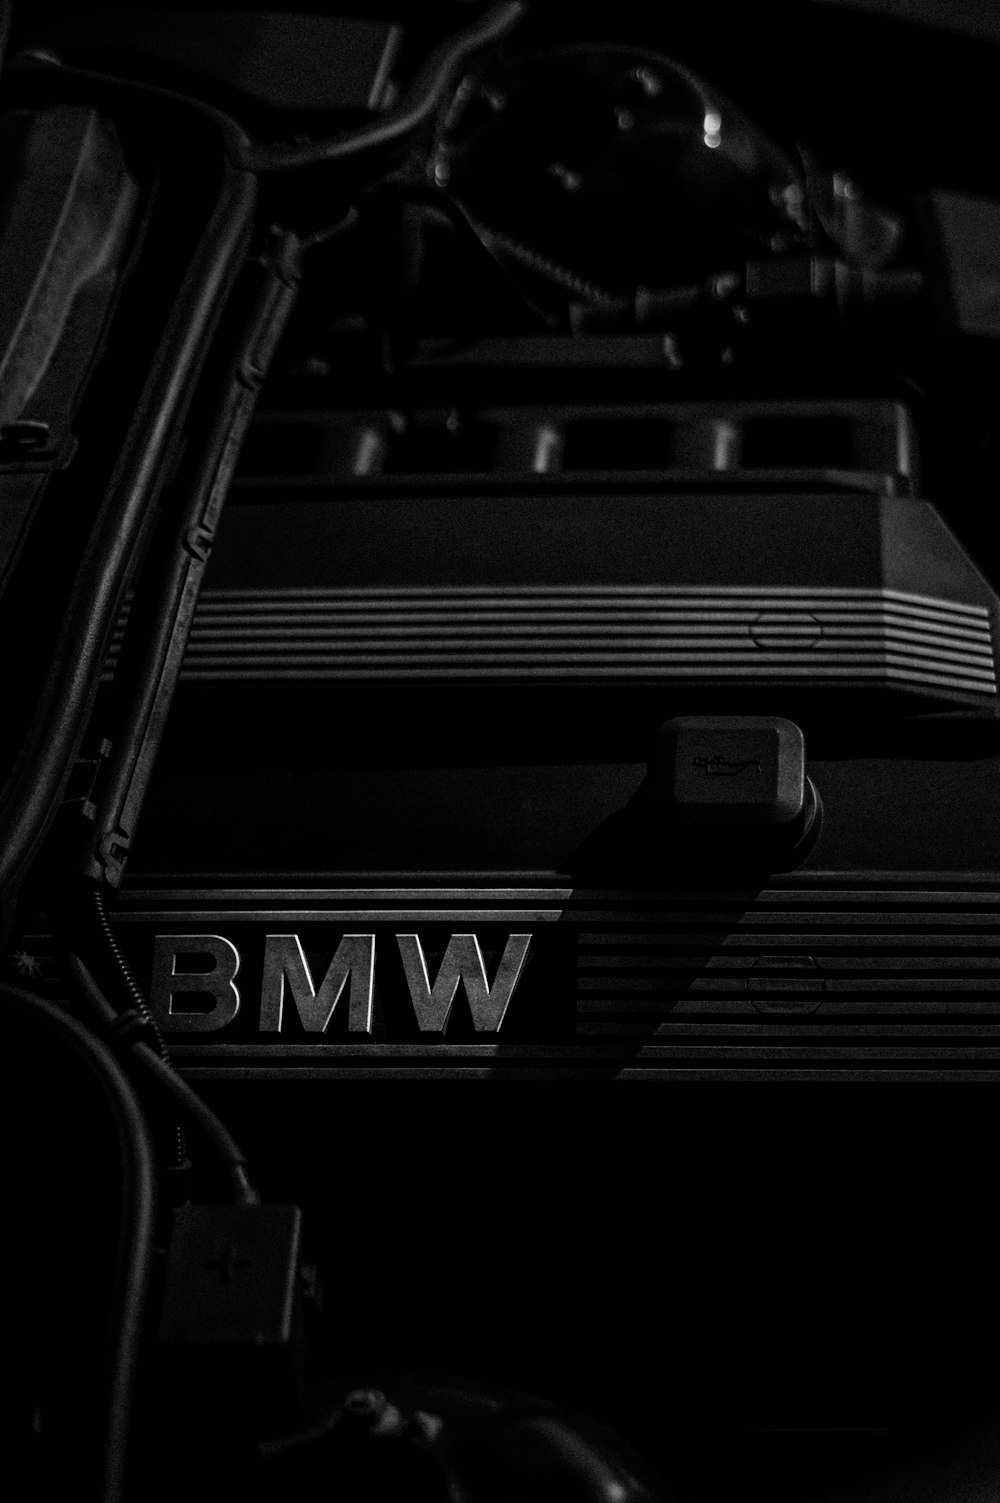 BMWエンブレムのグレースケール写真